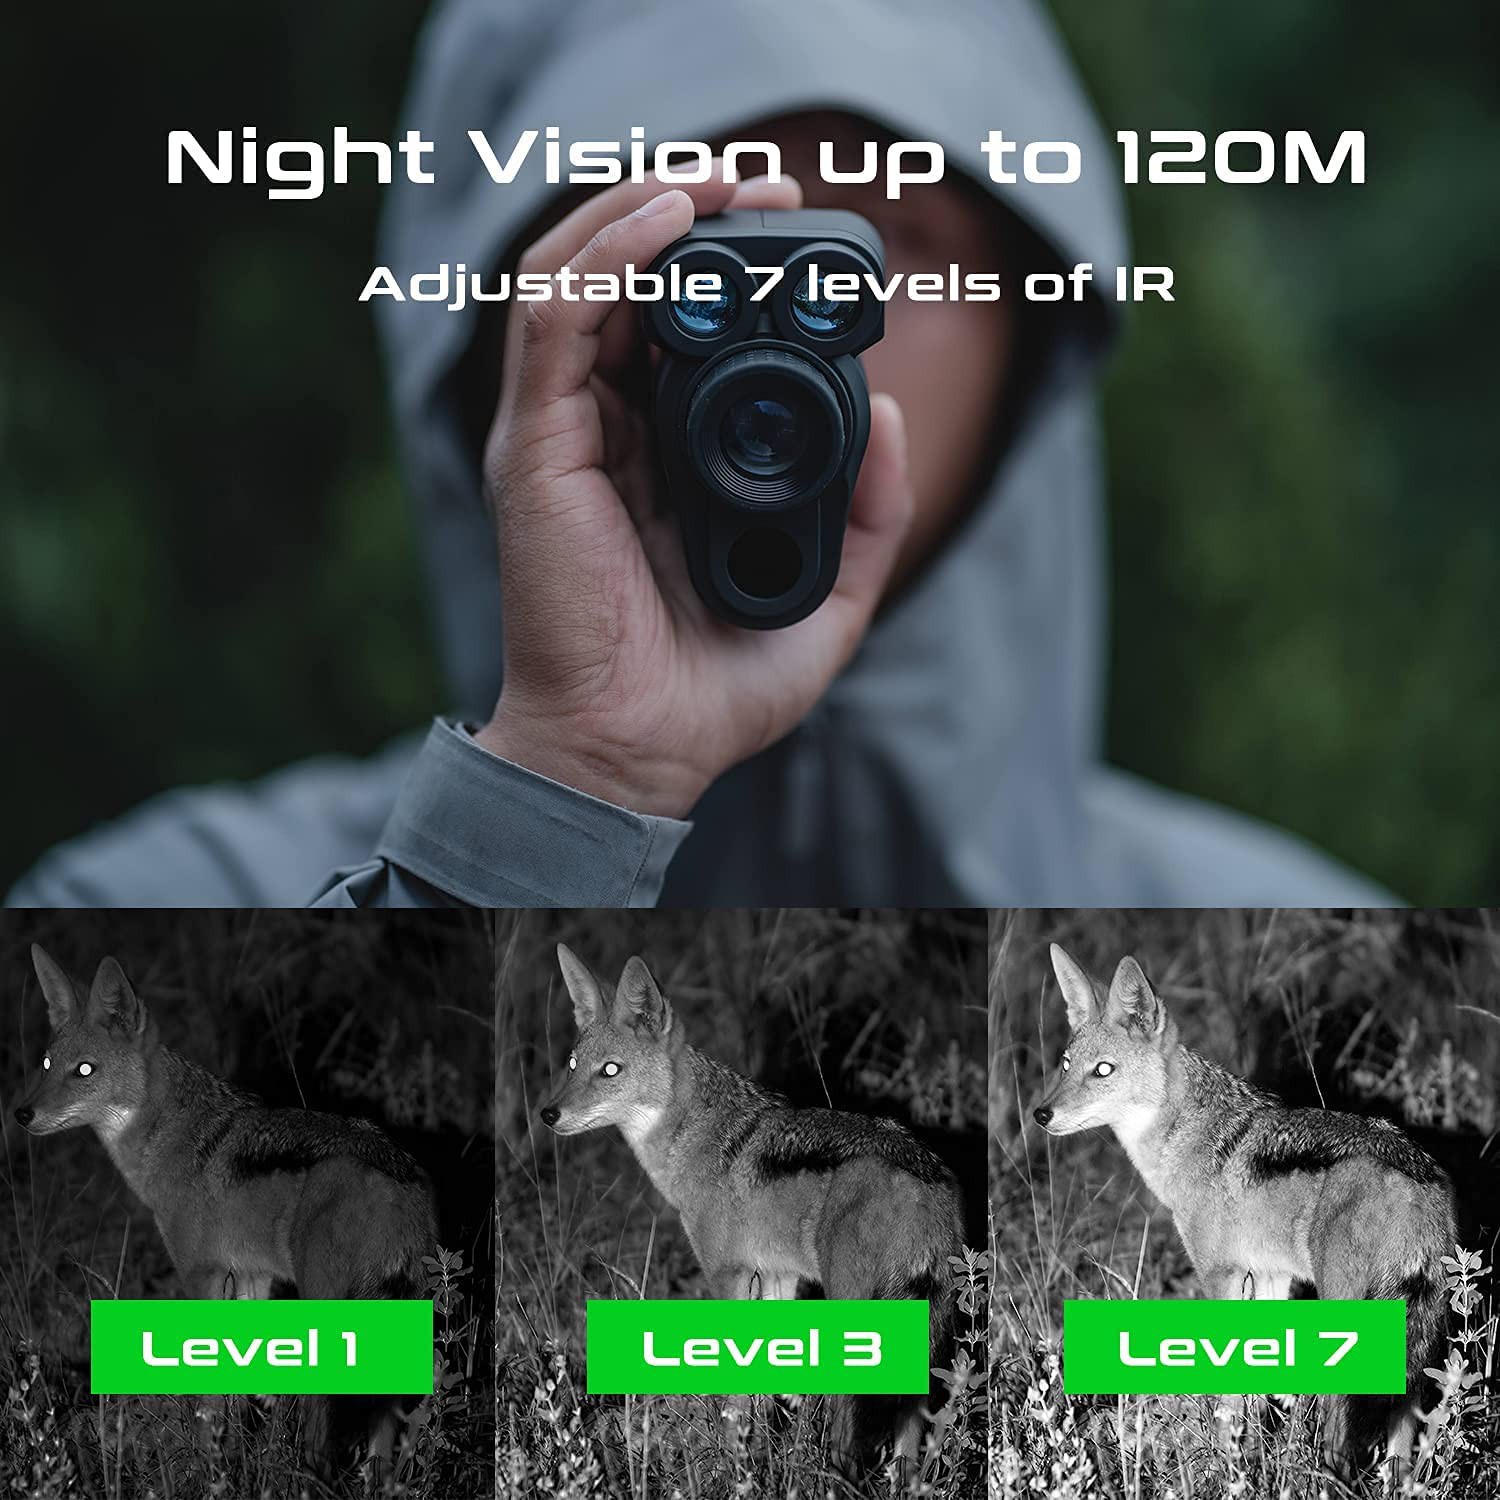 μονόφθαλμο με νυχτερινή όραση έως 120 μέτρα τη νύχτα